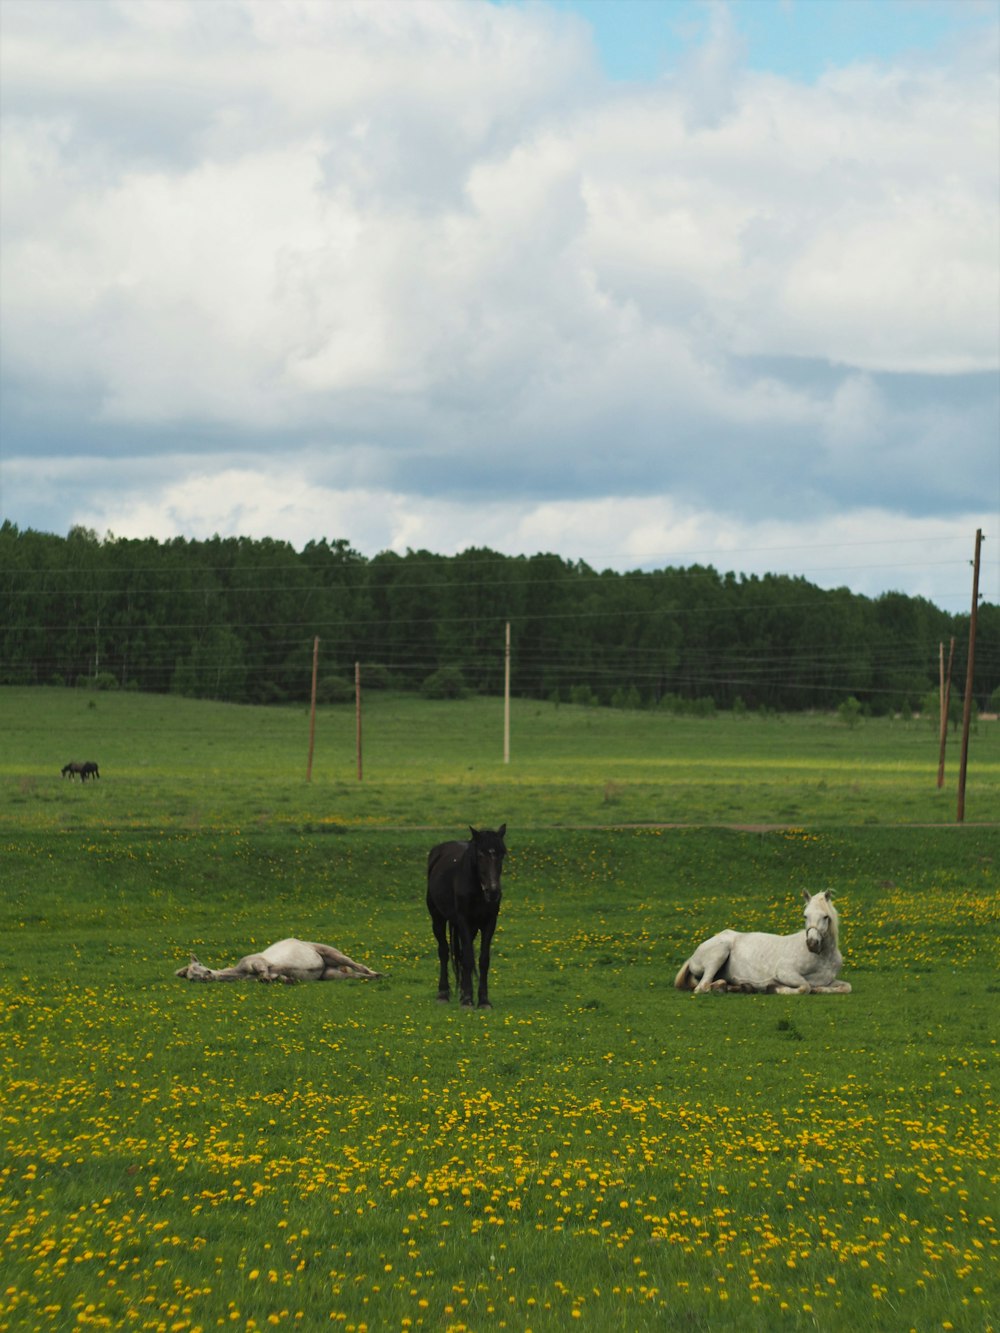 caballos blancos y negros en el campo de hierba verde bajo nubes blancas durante el día